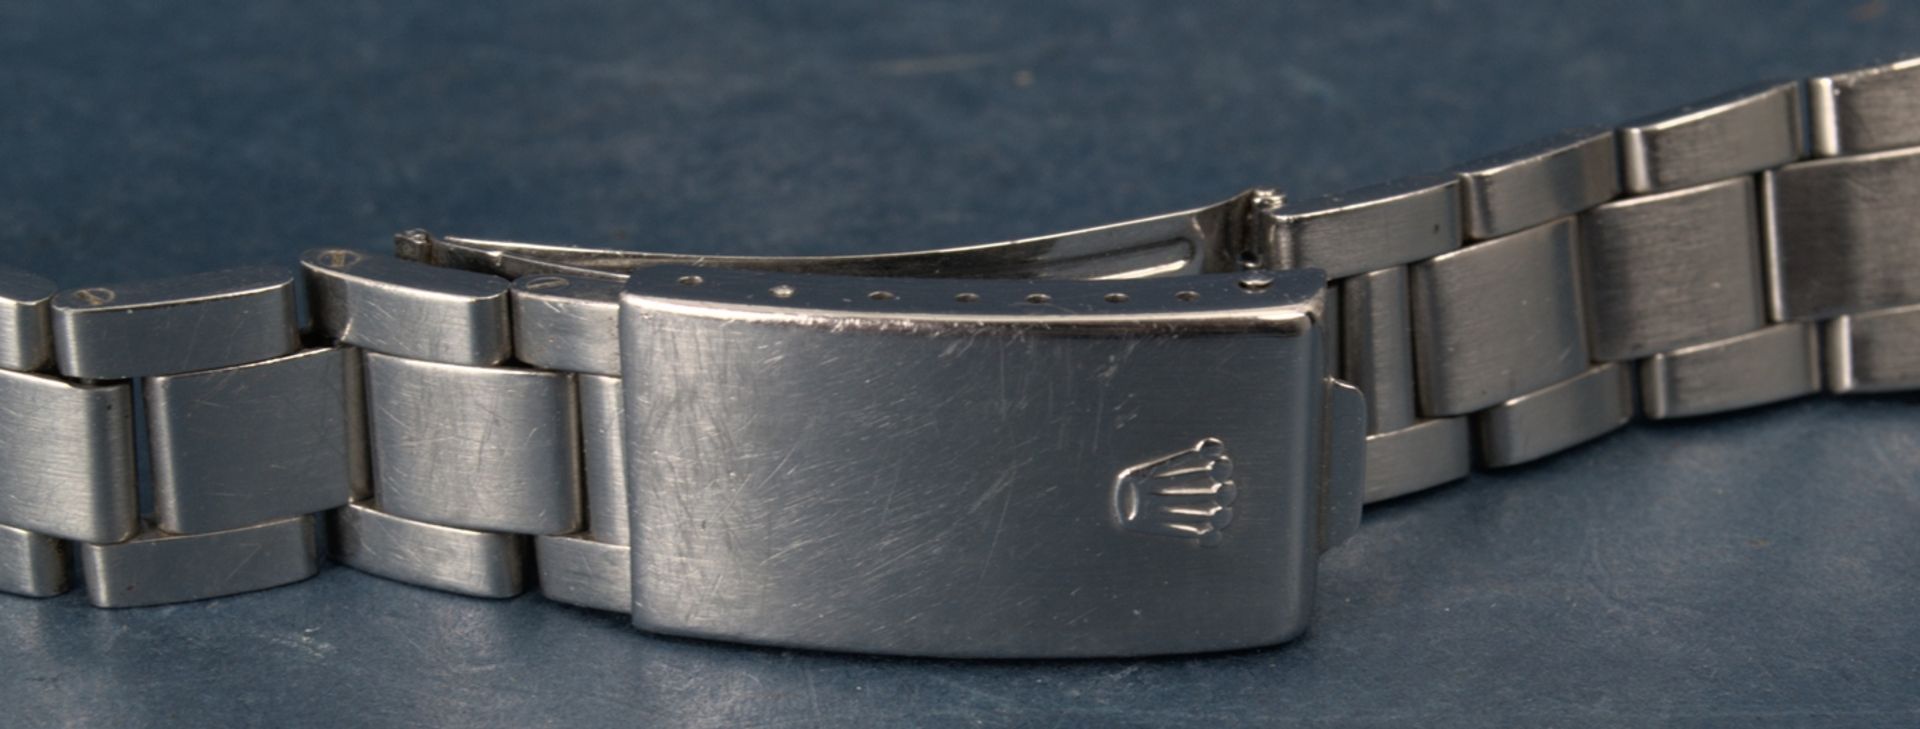 Rolex-Gliederarmband mit Faltschließe der wohl 1960er/70er Jahre, Stahl. Max. Gesamtlänge inkl. - Bild 10 aus 12